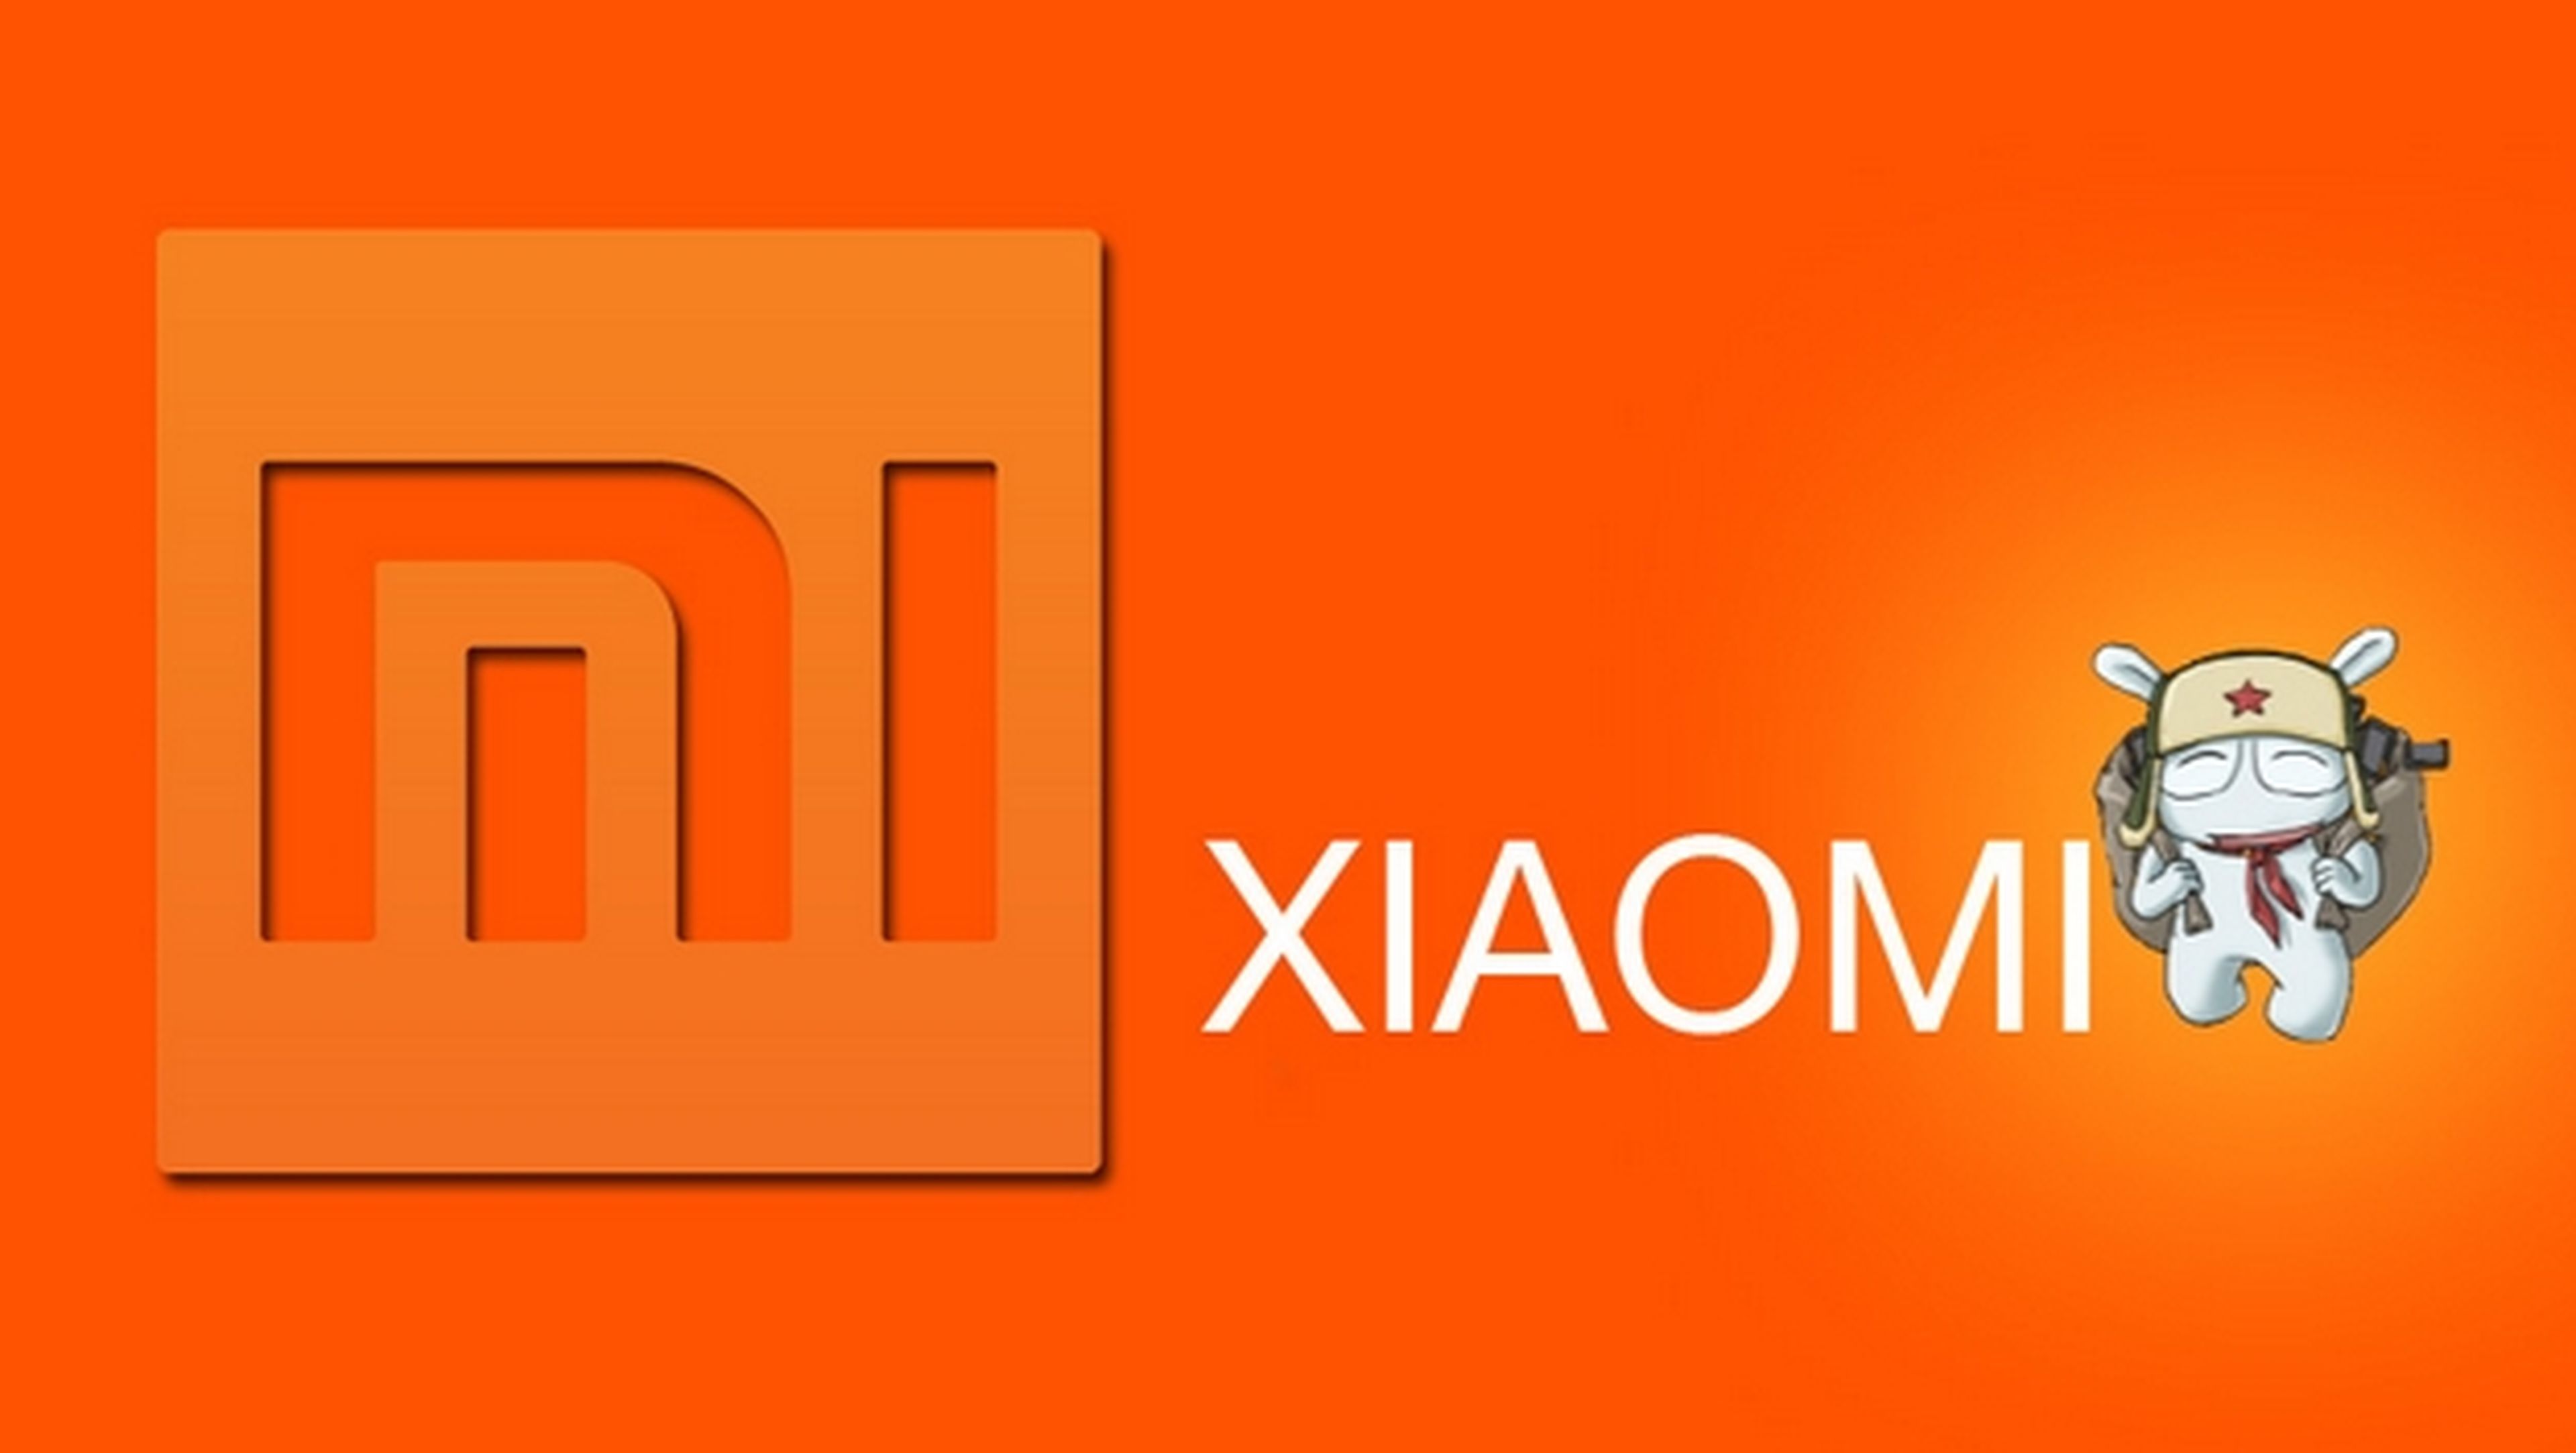 Xiaomi entra en el Libro Guinness de los Récords tras vender 2.1 millones de smartphones en 24 horas.